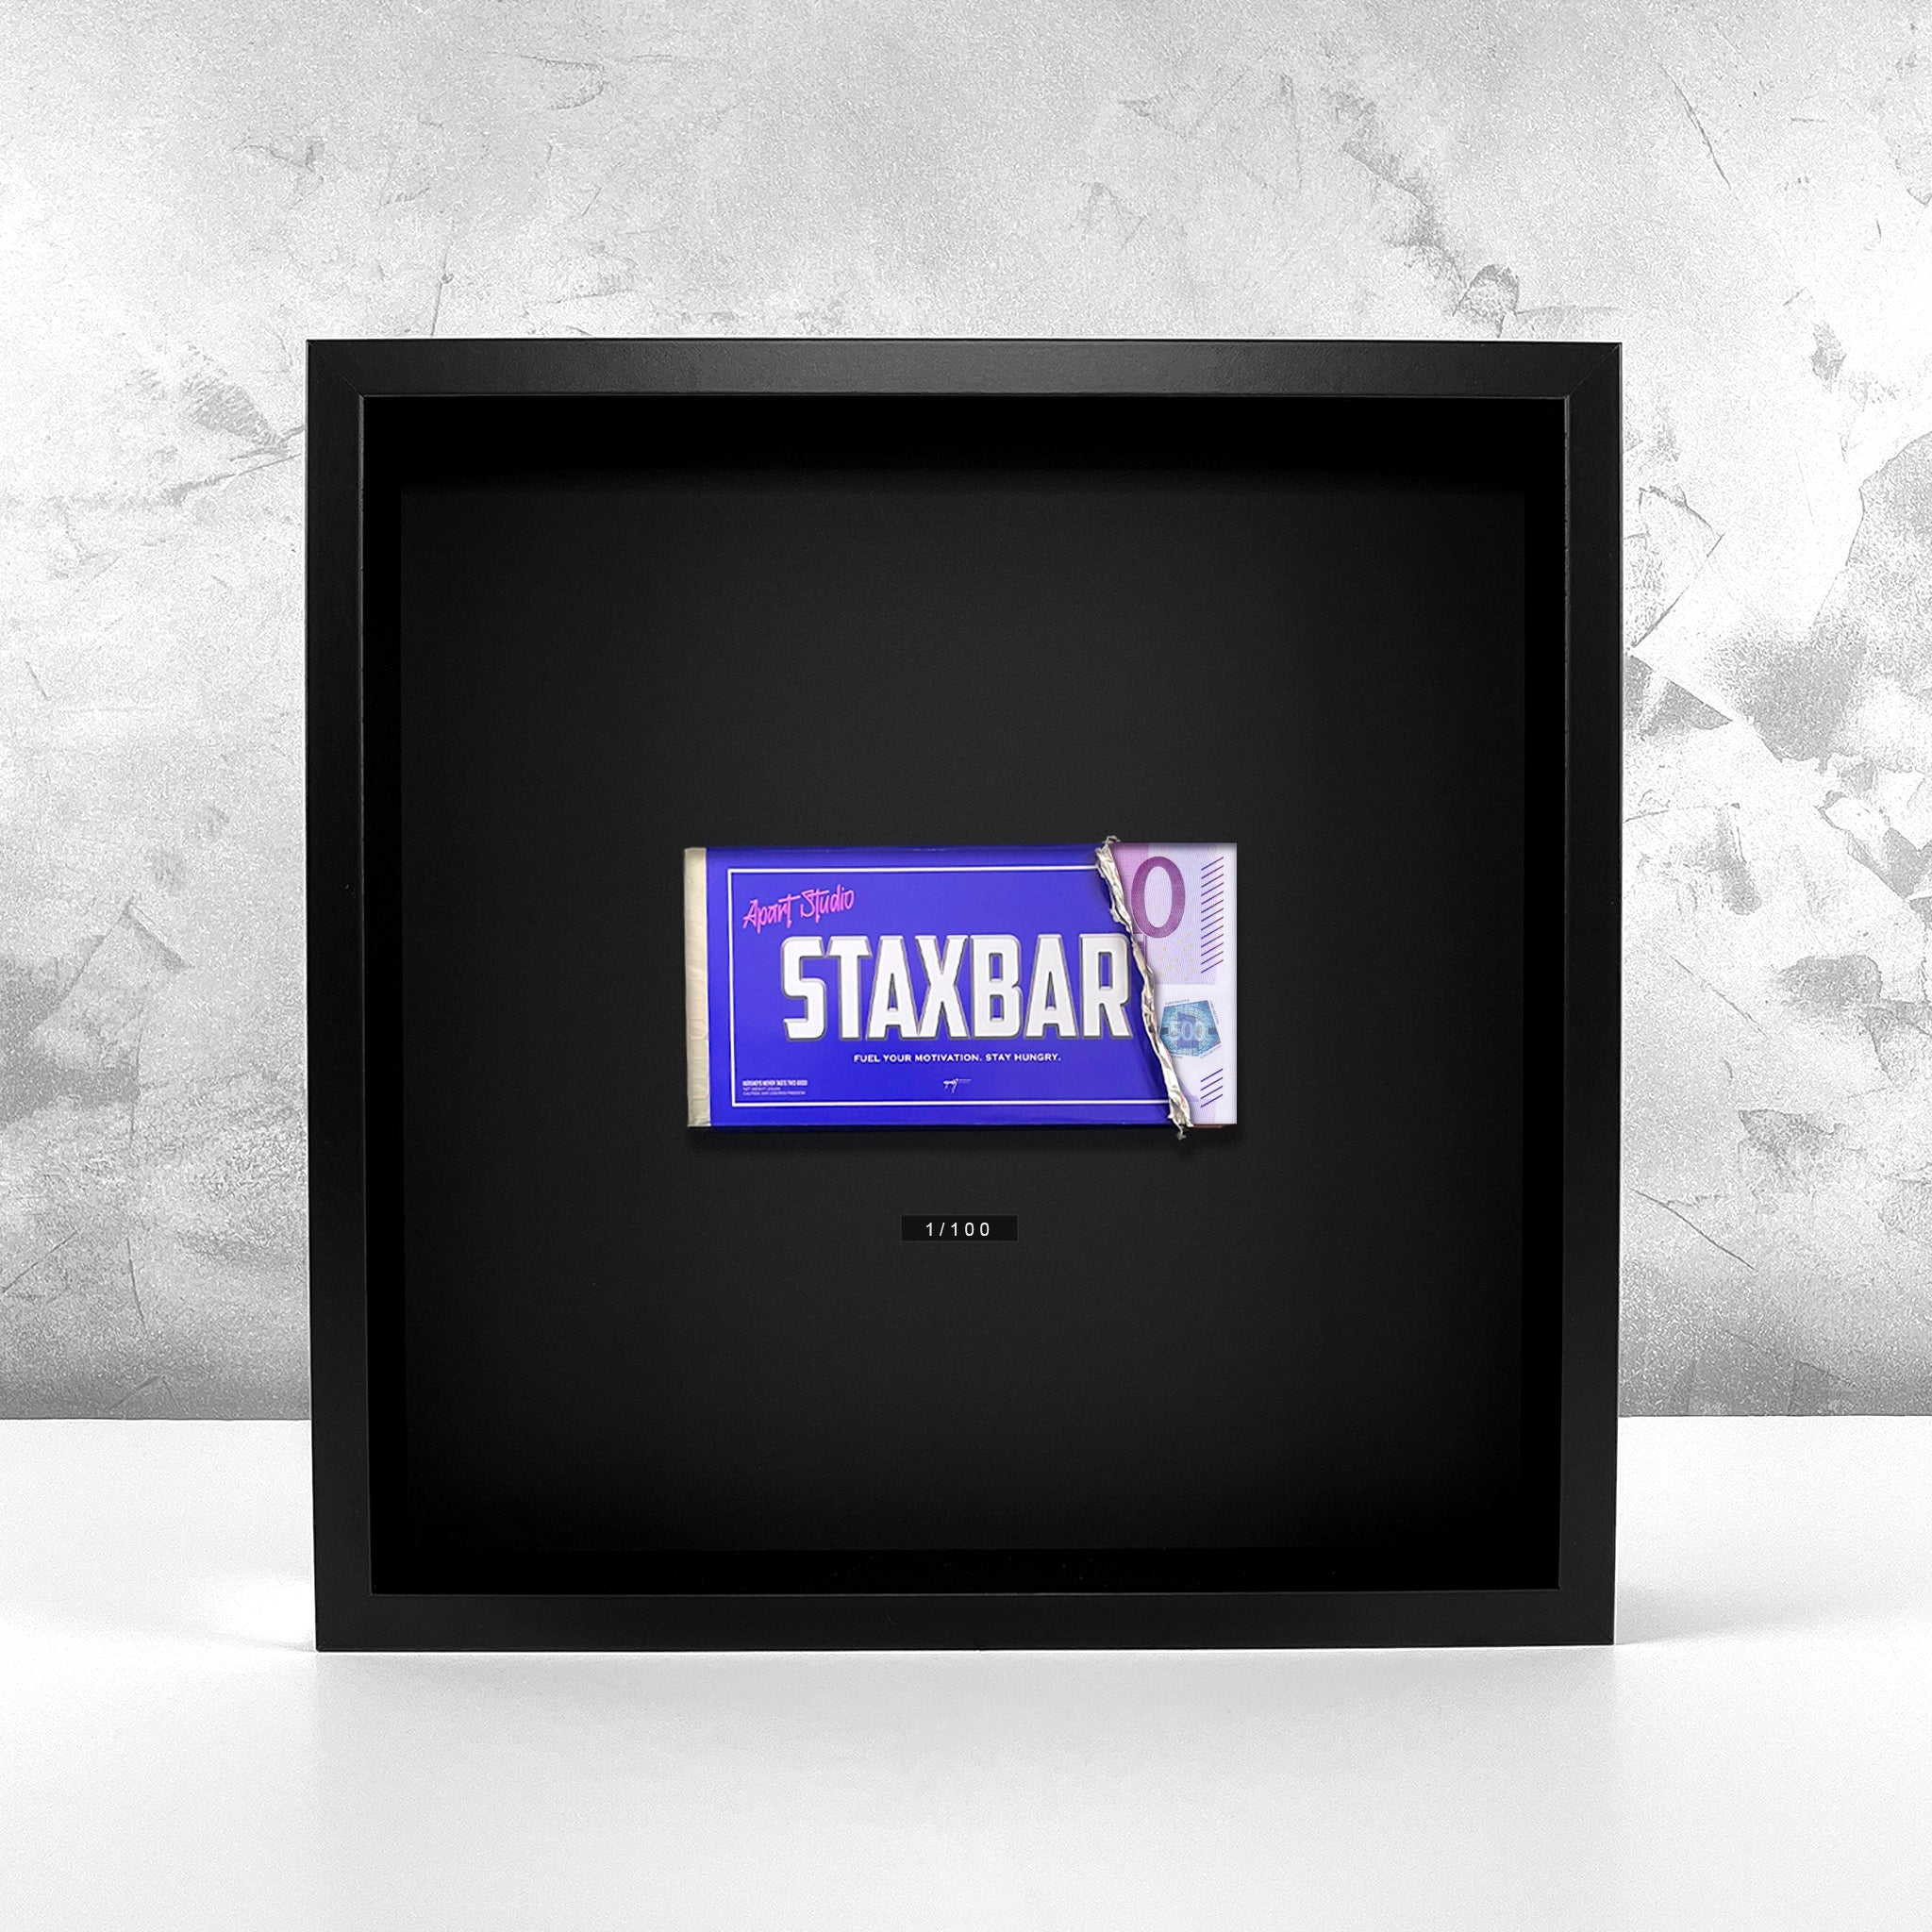 Staxbar Artwork - EUR 500